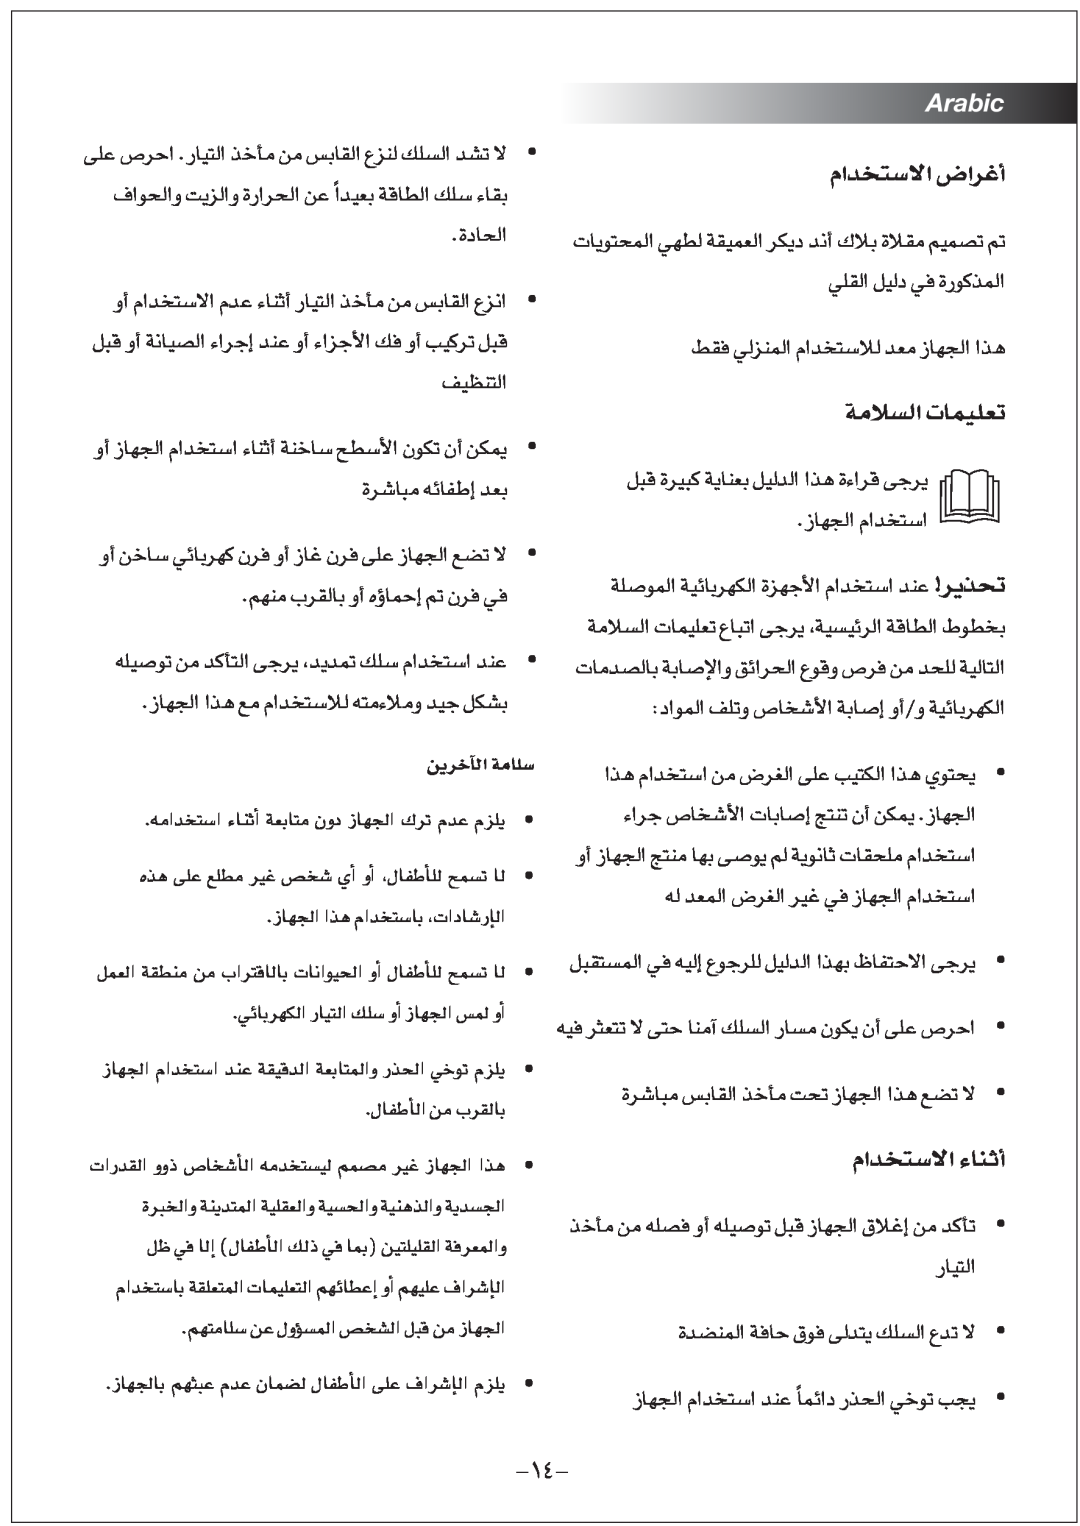 Black & Decker EF1220 manual øjôNBÉdGáeÉ∏S, Arabic, NU“∞π« ªb«Â∑«ß, ªb«Â∑«ôß ¨d«÷√, ºö±W∞« ¢FKOLU‹, ªb«Â∑«ôß £MU¡√ 